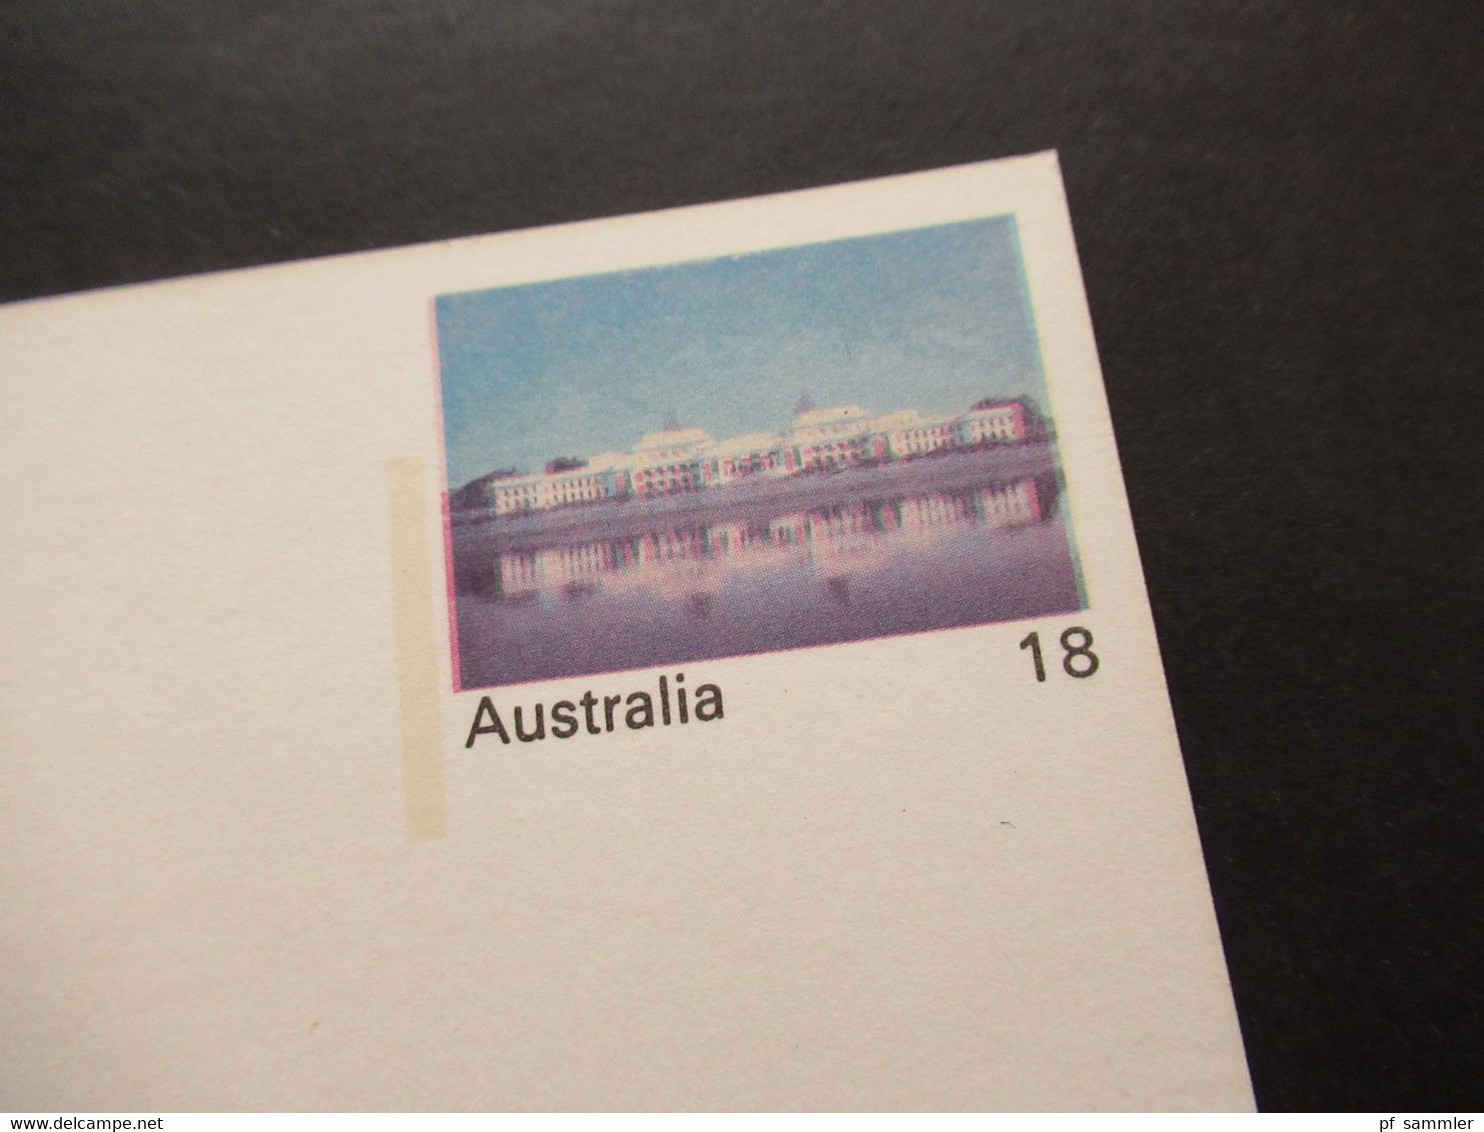 Australien 1976 Ganzsache Mit Druckfehler / Verschobener Druck! Parliament House Vievew Across Lake Burley Griffin - Covers & Documents